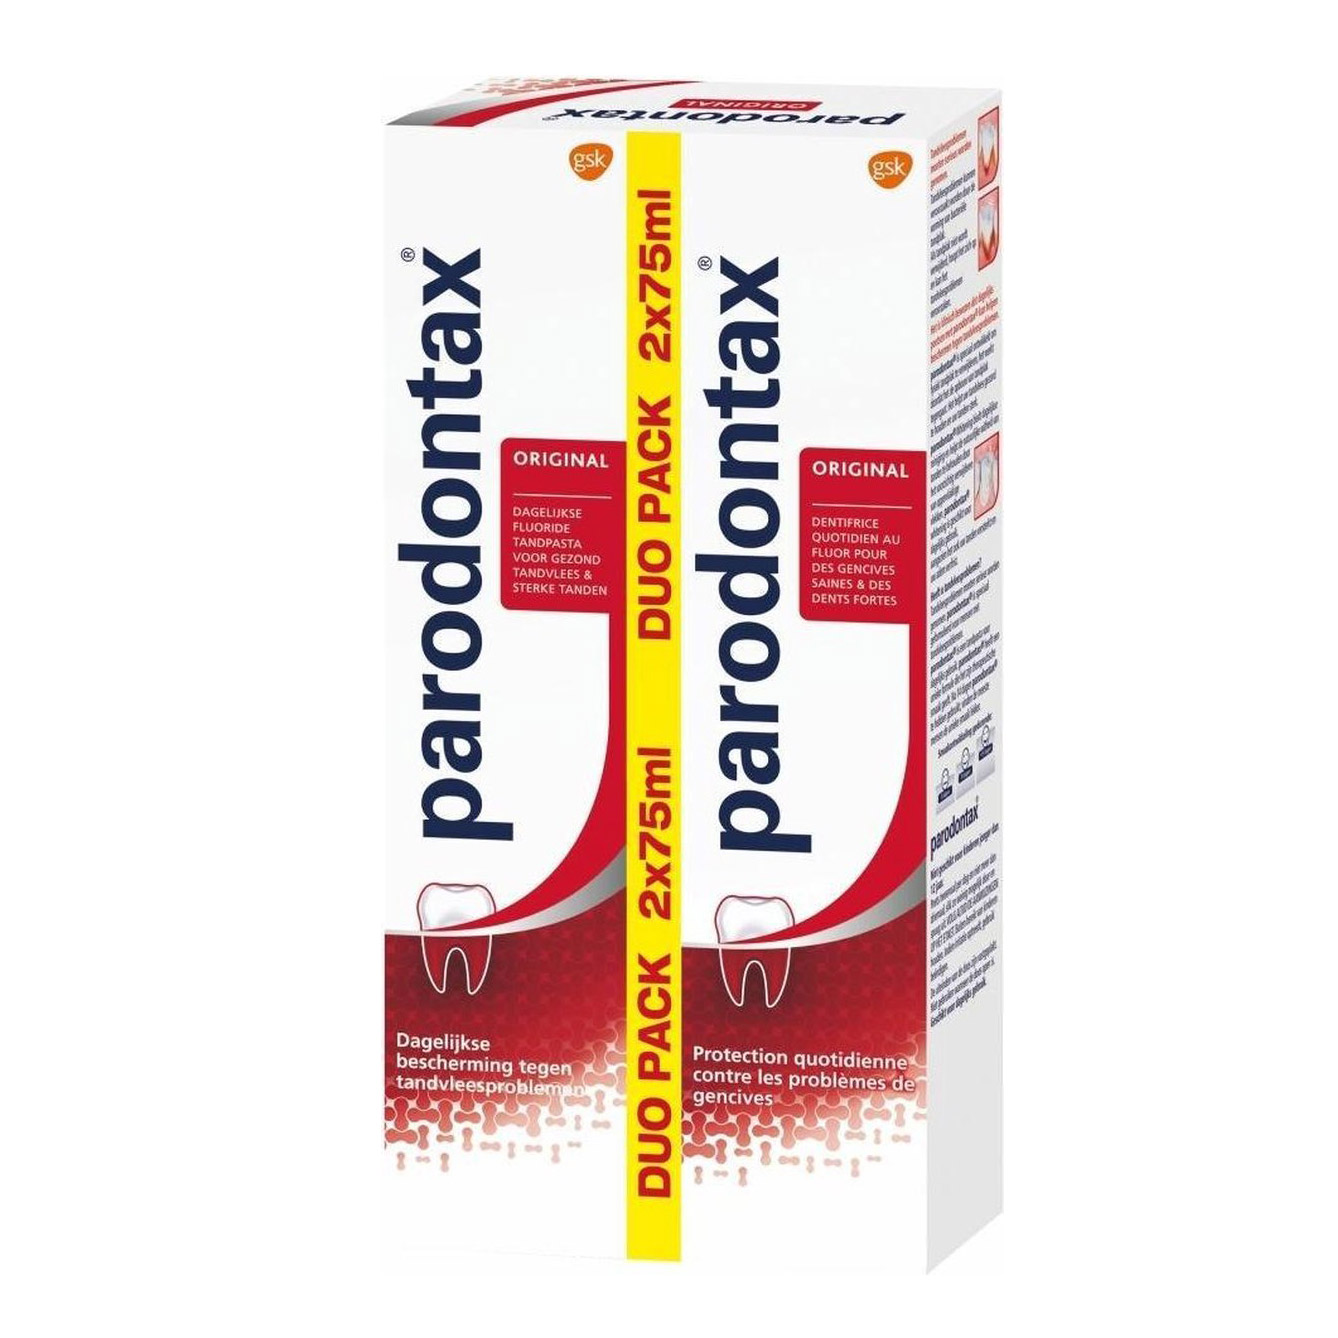 Spoedig industrie Vaccineren Parodontax Original Duopack 2x75ml kopen - Pazzox, online apotheek